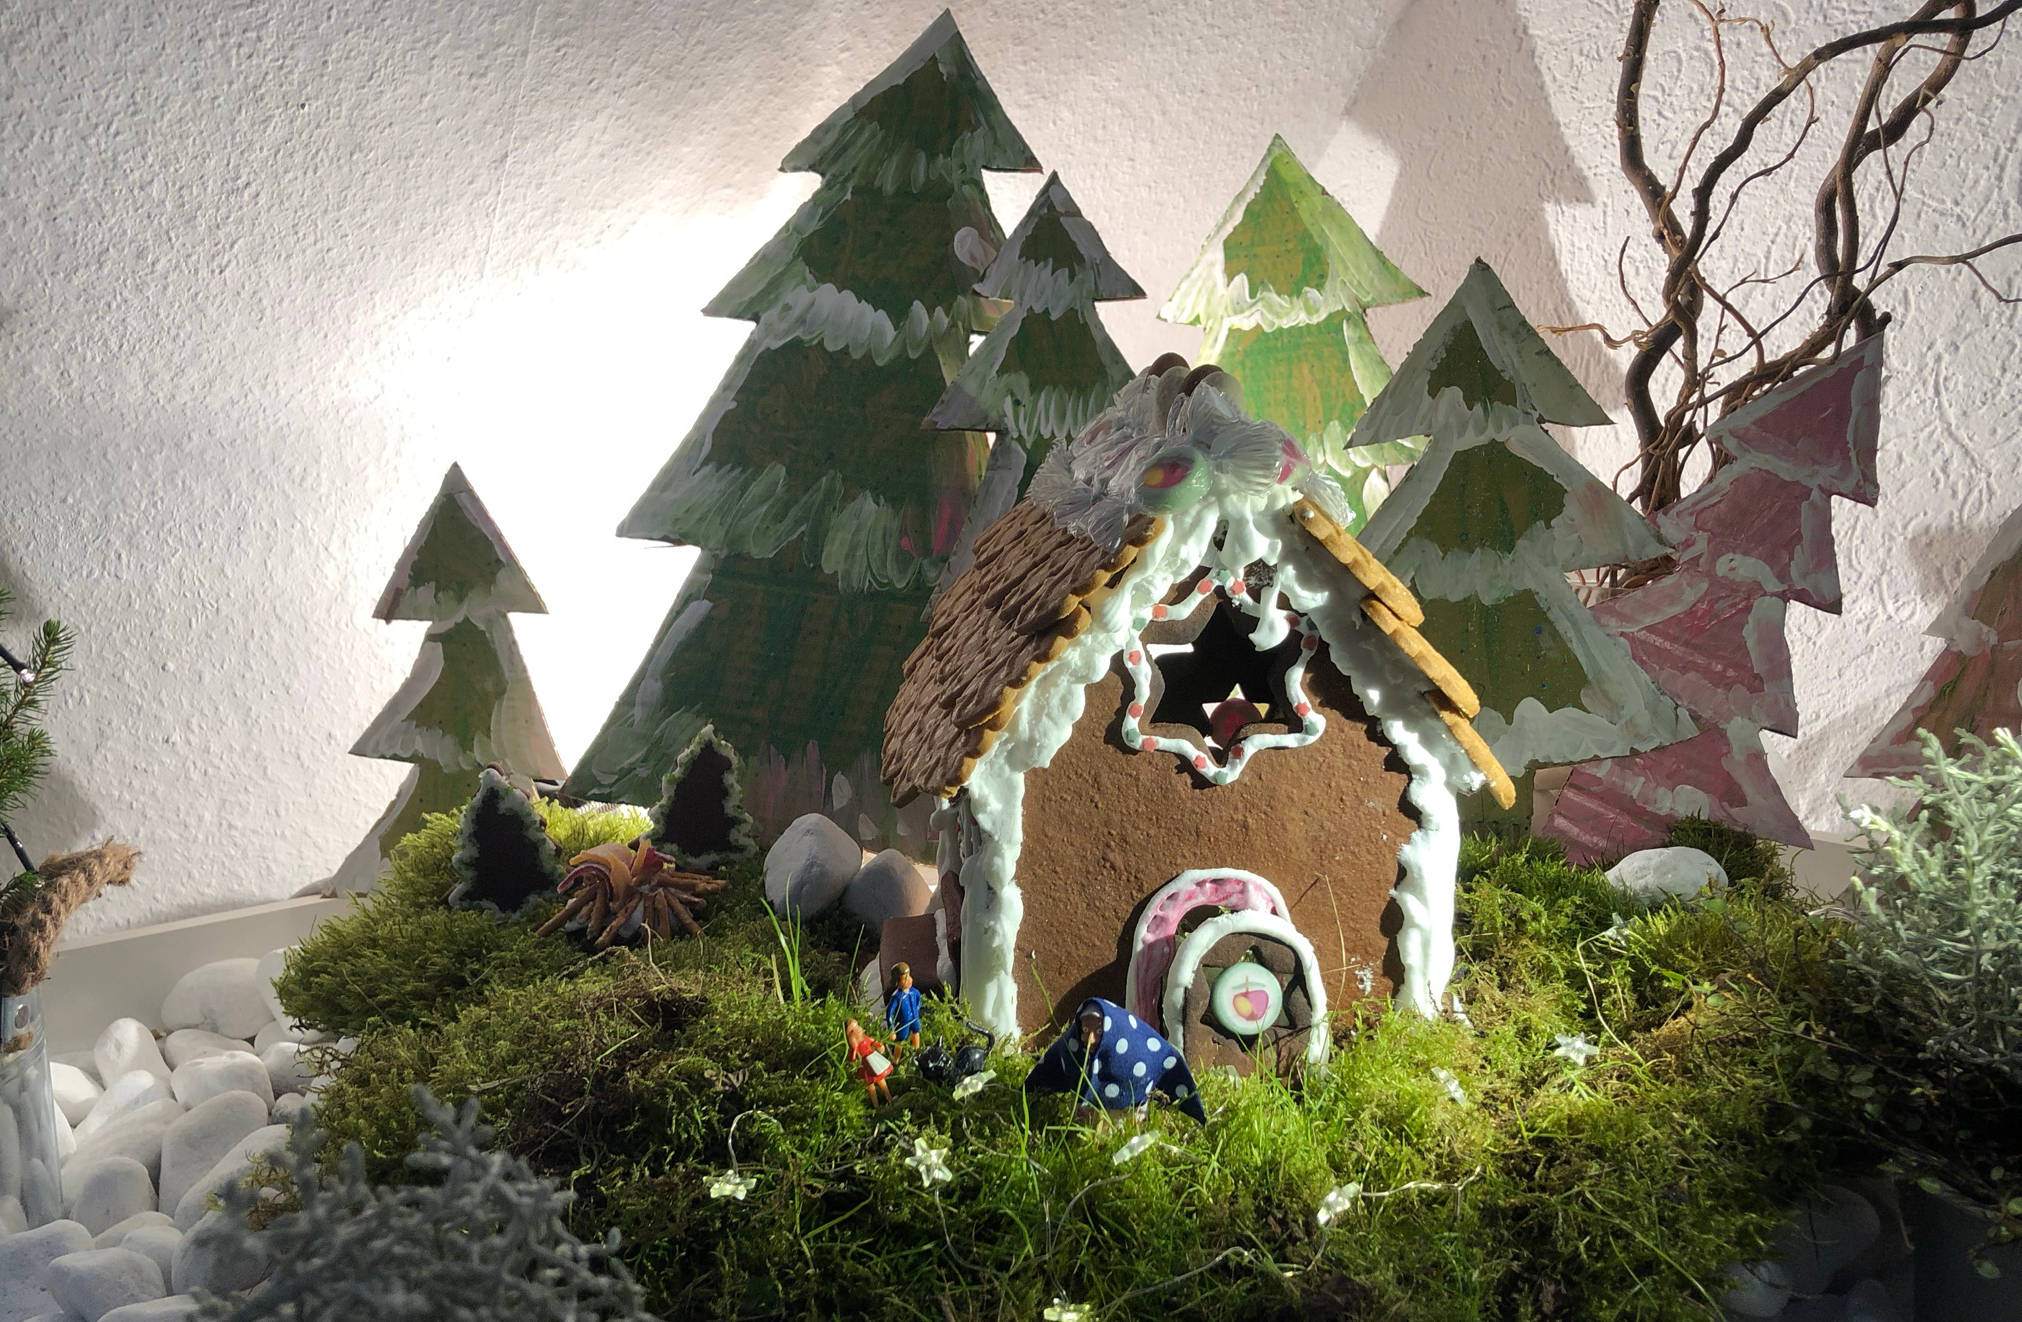 Lebkuchenhaus "Hänsel und Gretel" fertige Weihnachtsdeko fürs Wohnzimmer mit dem Lebkuchenhaus